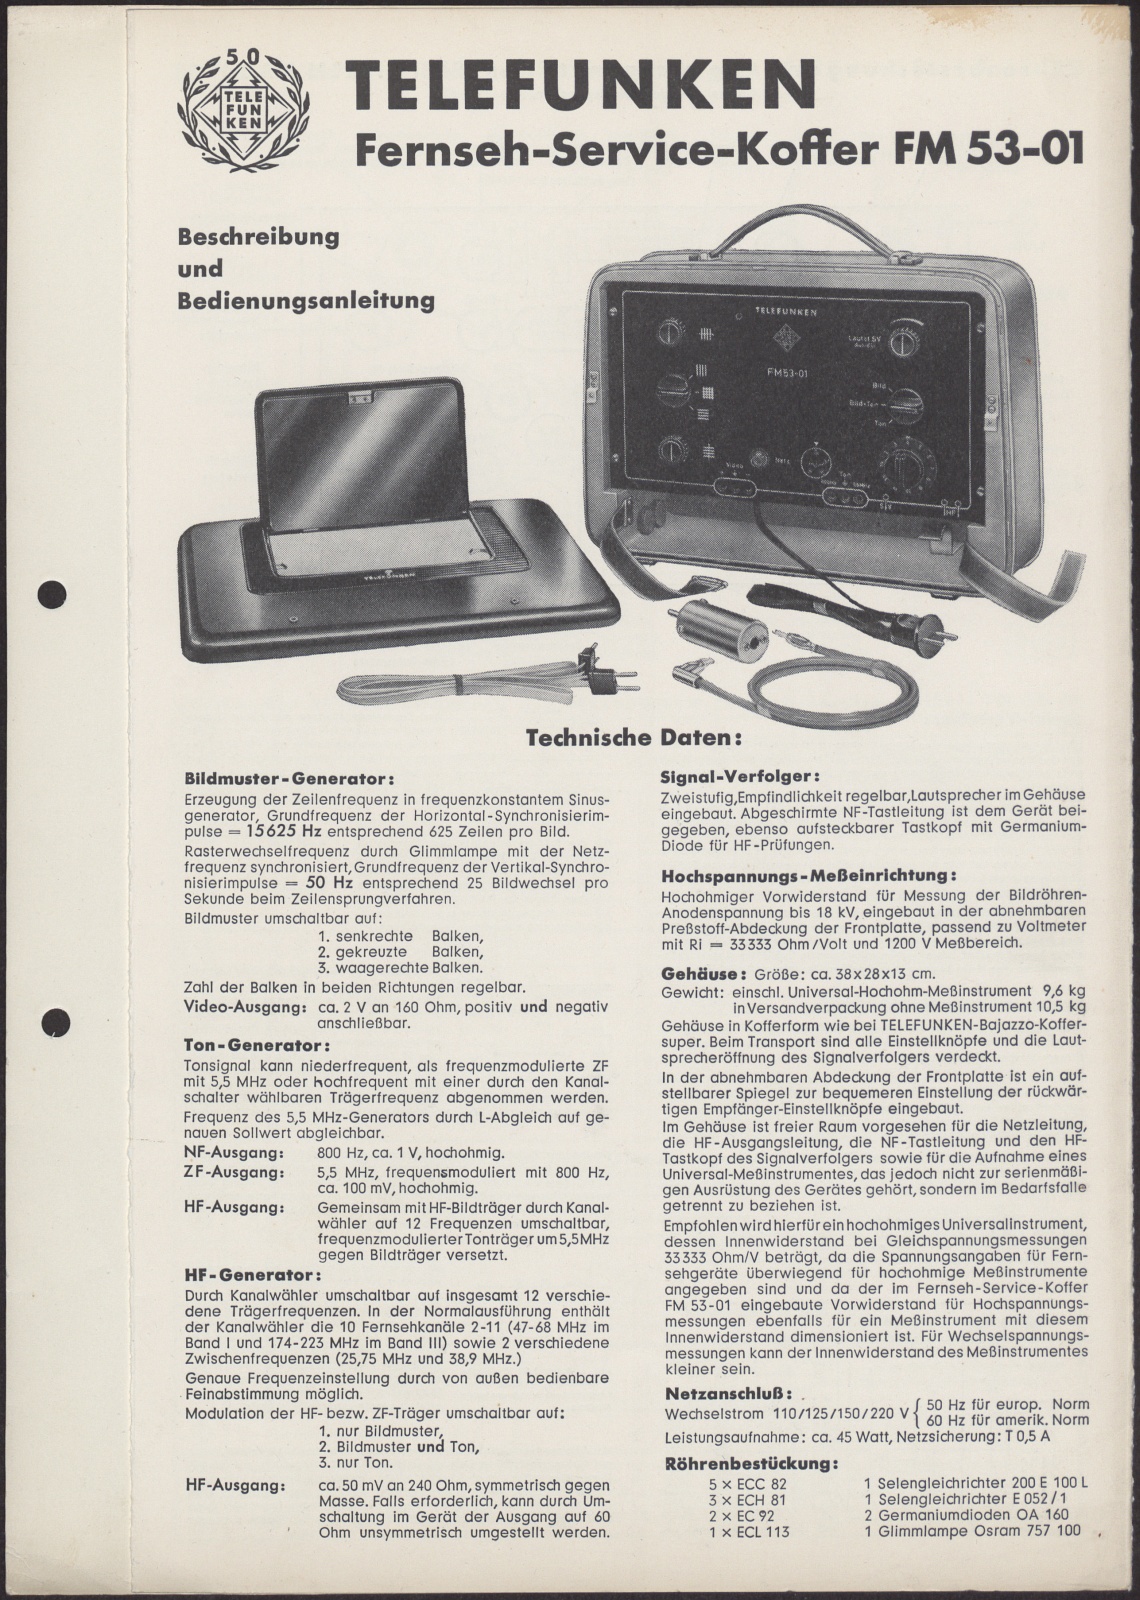 Bedienungsanleitung: Telefunken Fernseh - Service - Koffer FM 53 -01. Beschreibung und Bedienungsanleitung (Stiftung Deutsches Technikmuseum Berlin CC0)